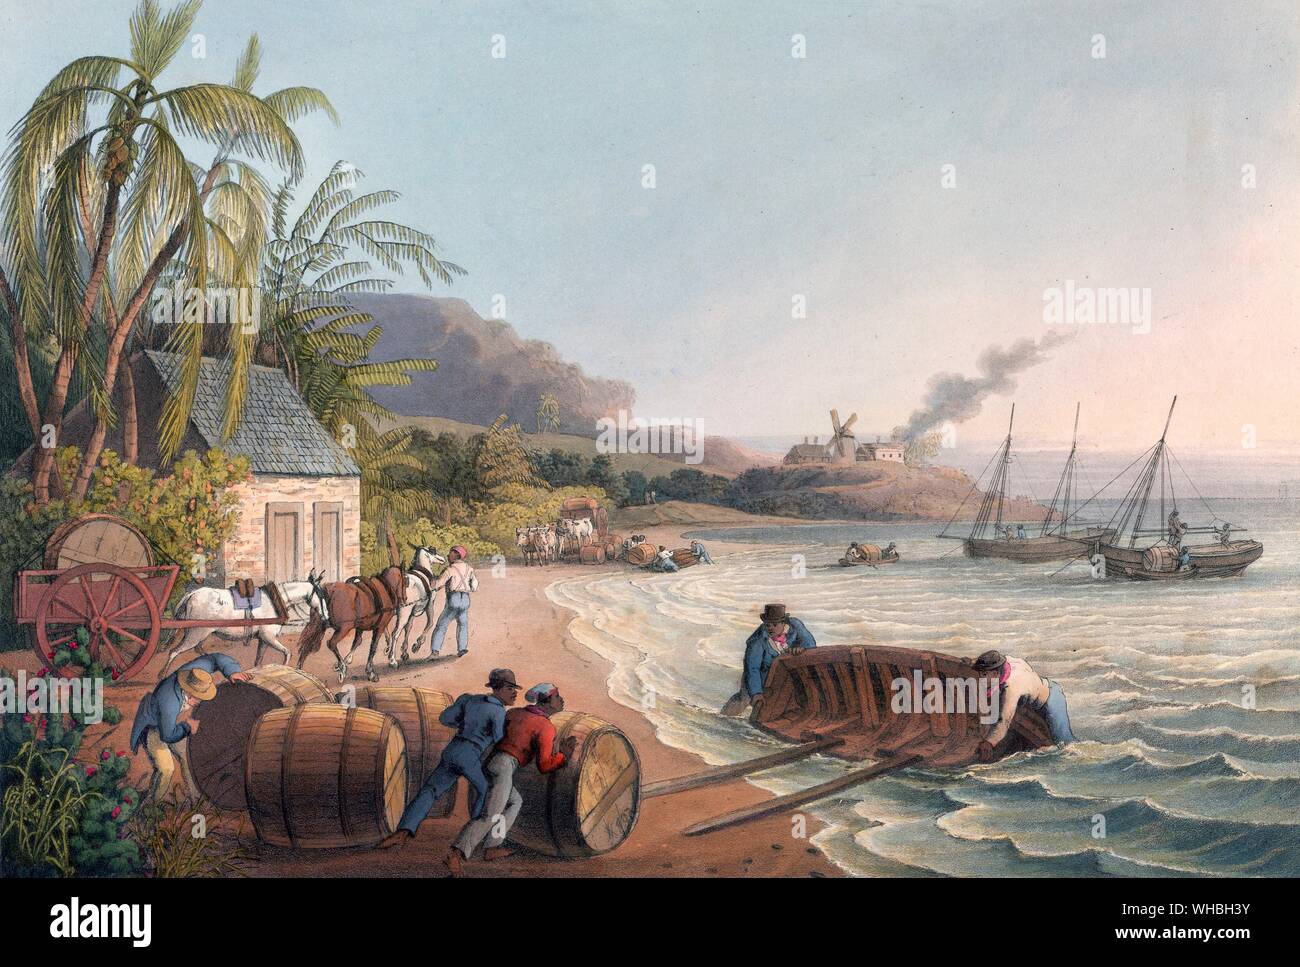 Esclaves chargeant des hogsheads de sucre sur un bateau, 1823. De dix points de vue dans l'île d'Antigua, dans laquelle sont représentés les processus de fabrication du sucre Banque D'Images